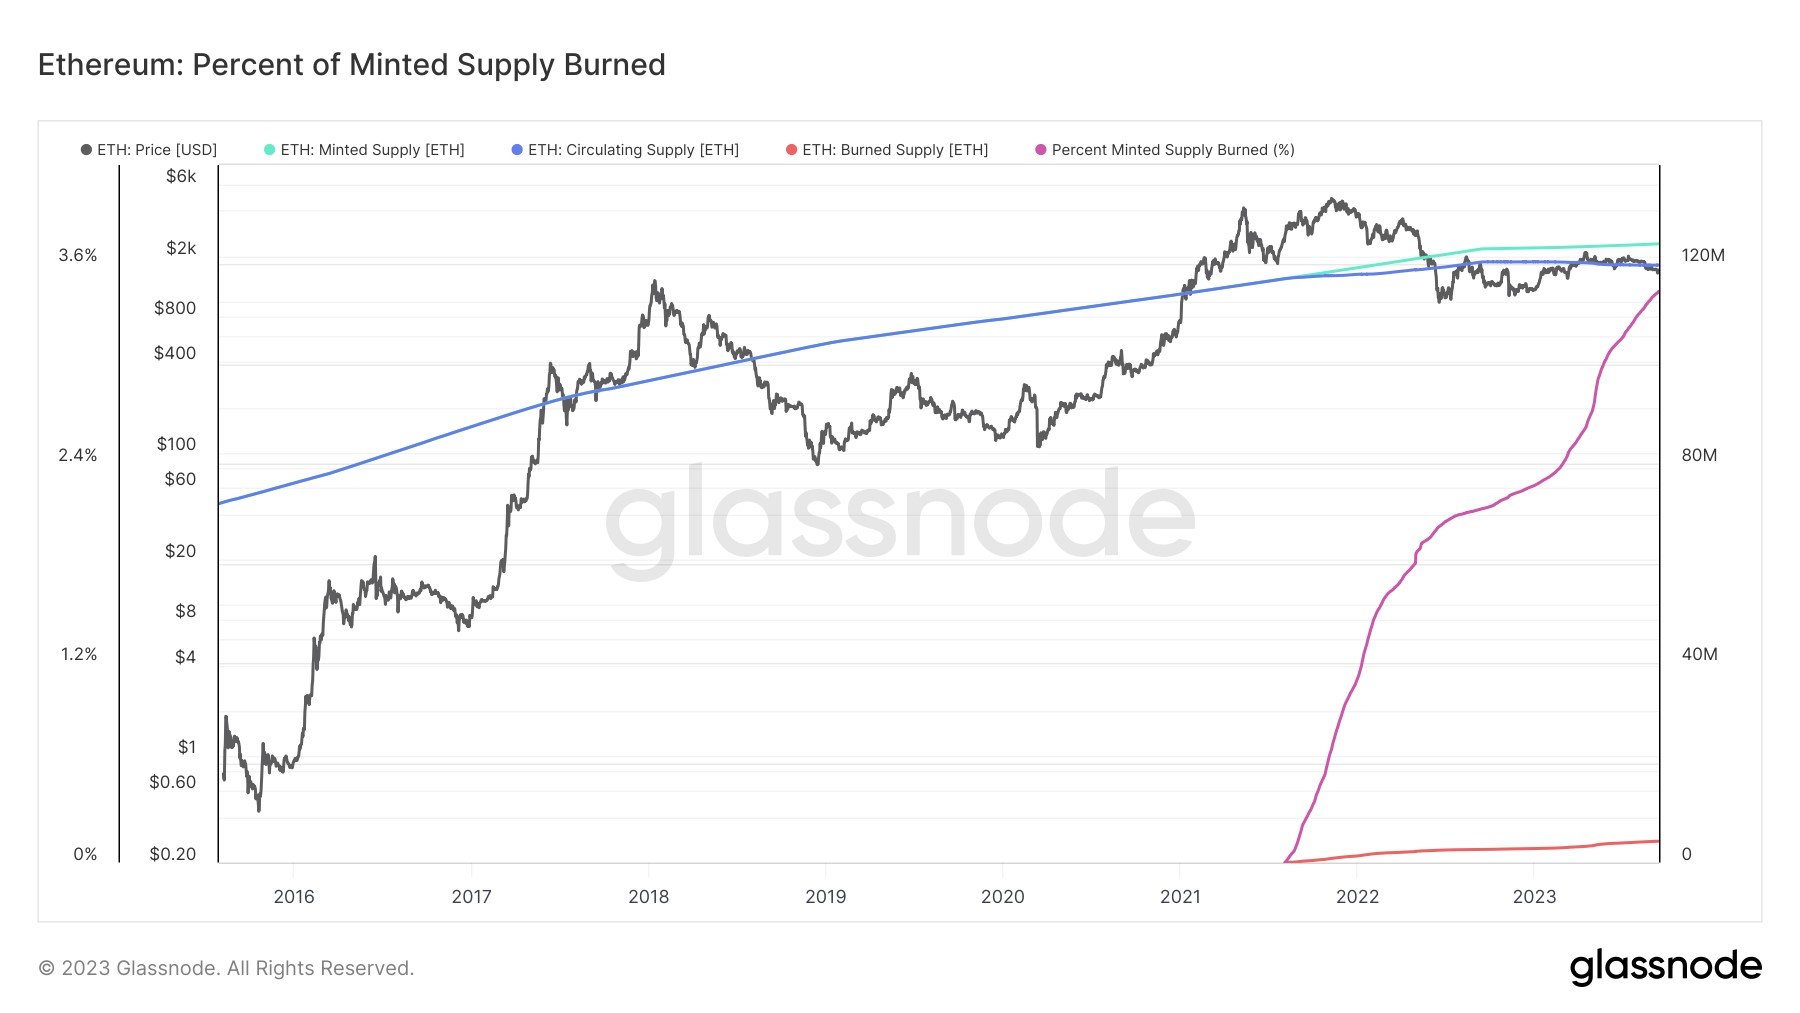 Mined Supply Burned: (Source: Glassnode)